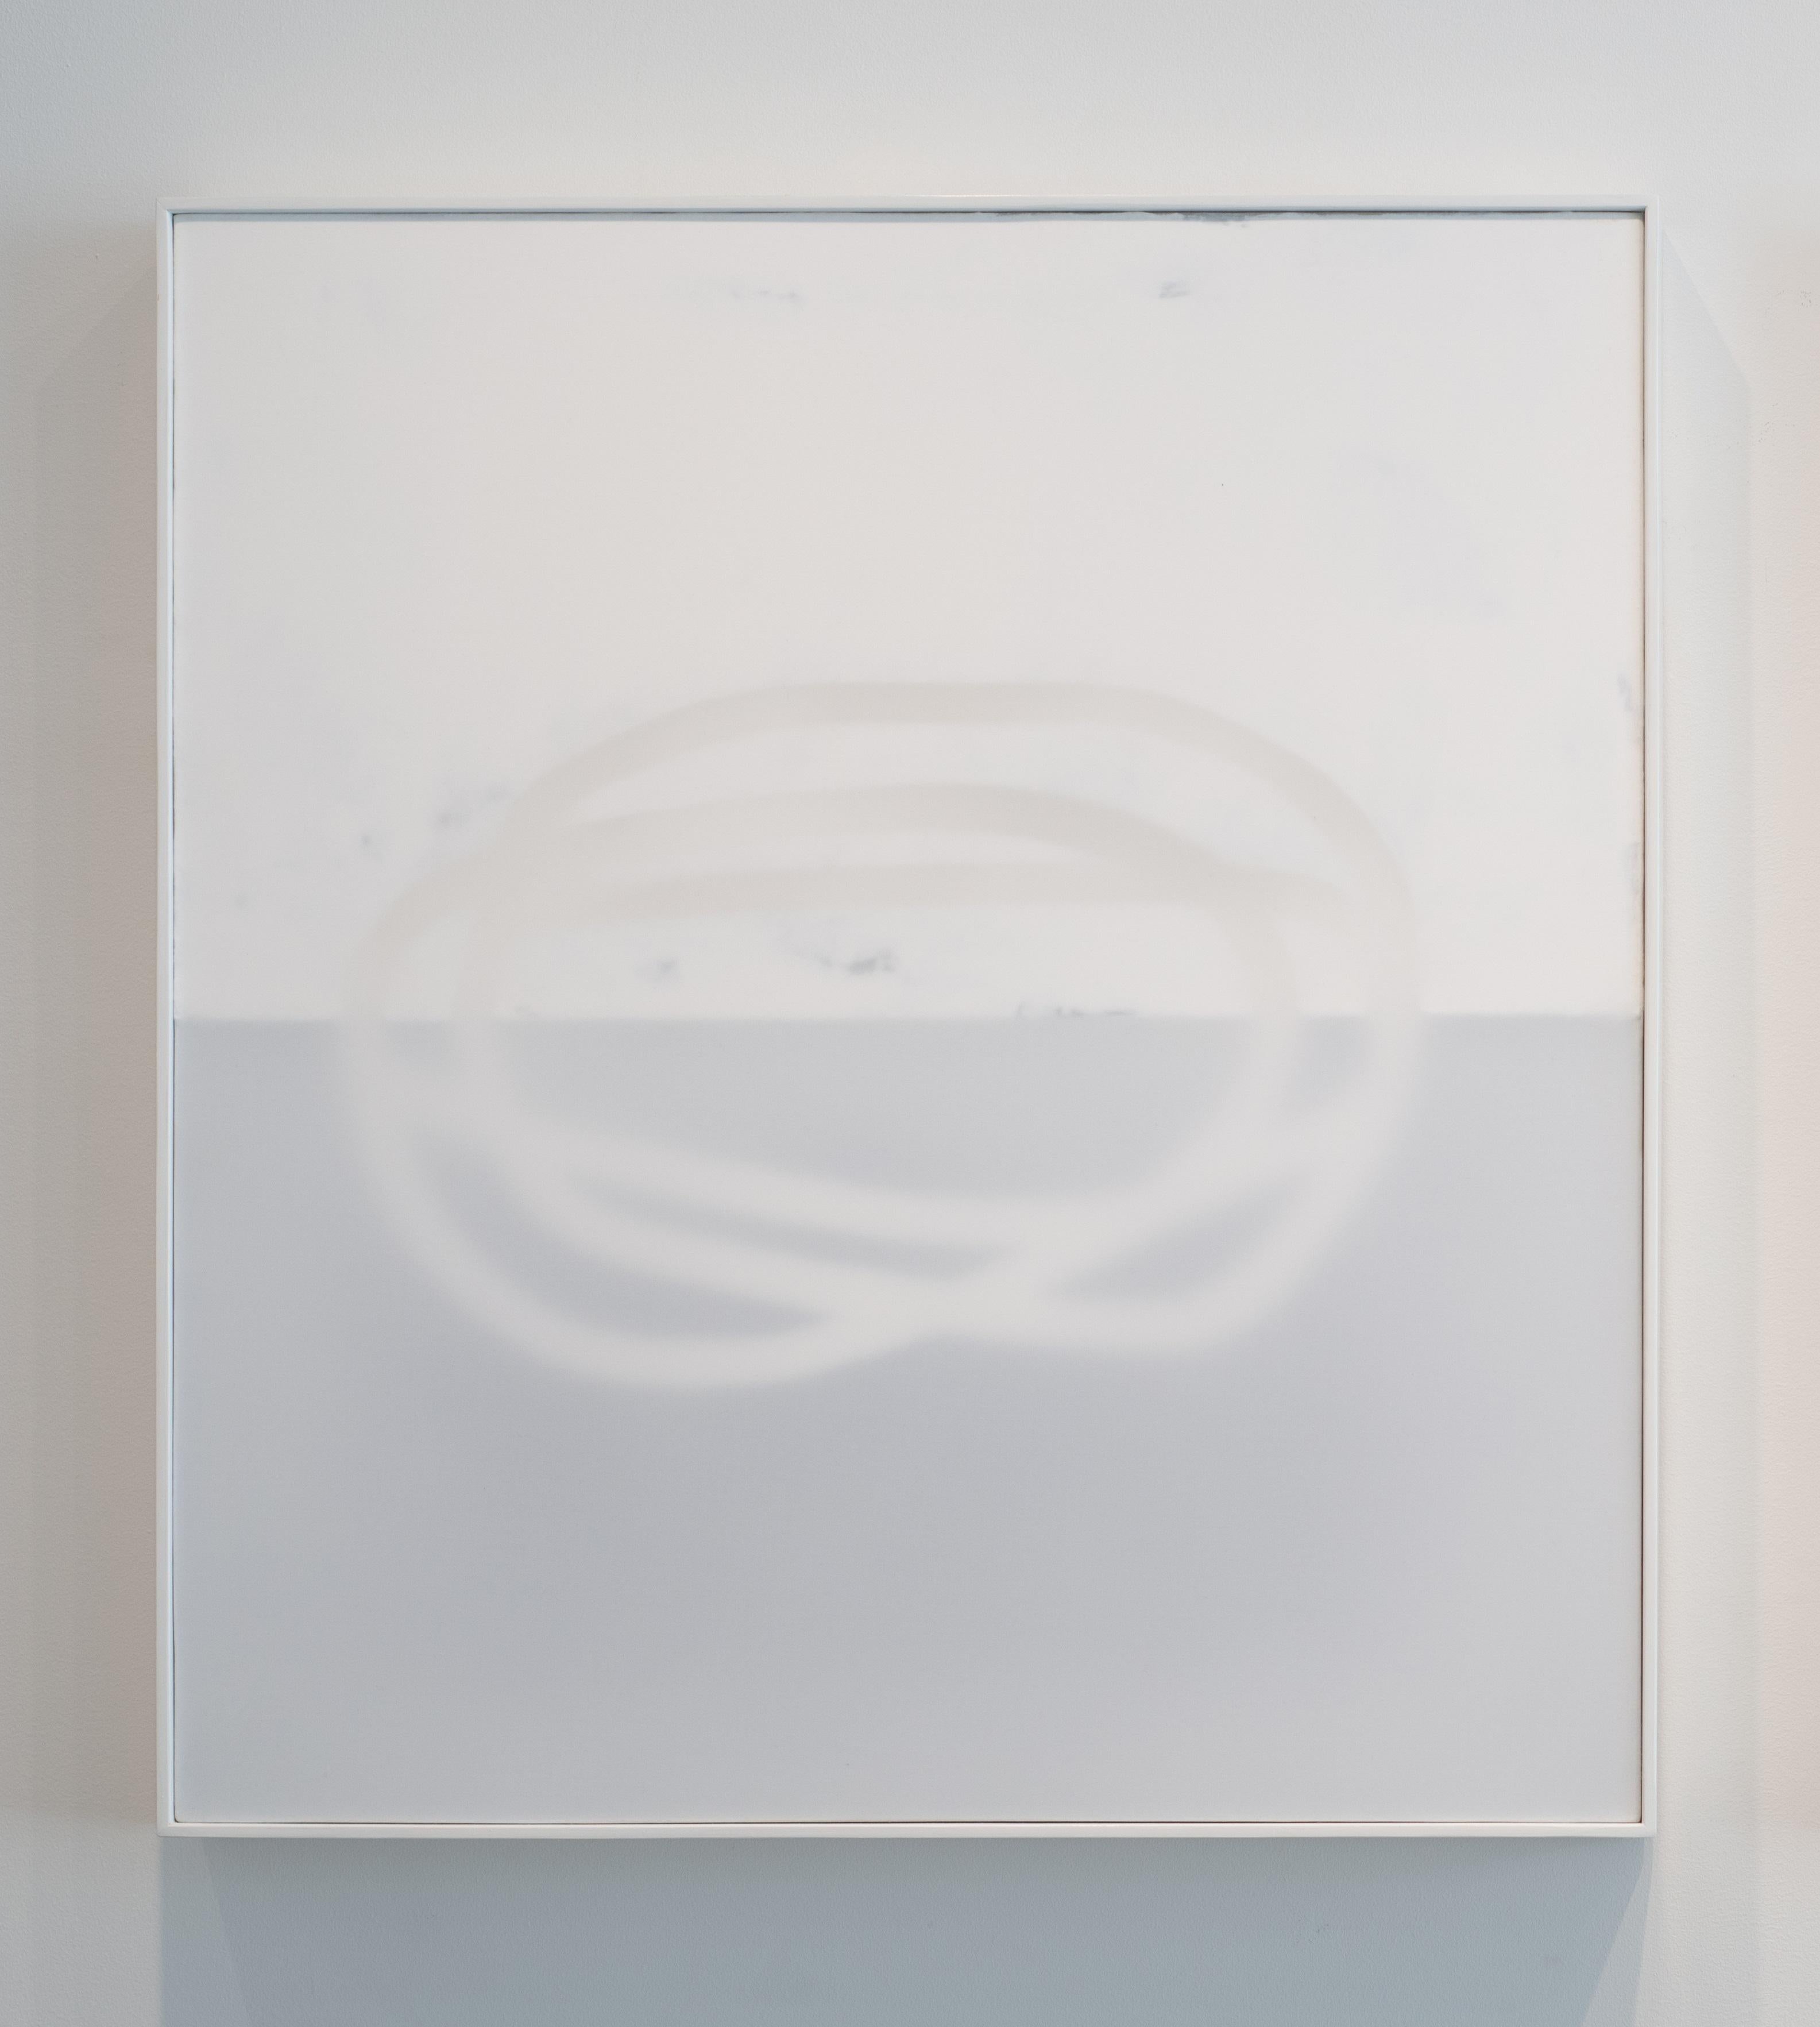 Drive 6, 2022
Technique mixte sur toile
36 x 33 pouces
91.4 x 83,8 cm

Udo Nöger crée des peintures monochromes lumineuses qui capturent la lumière, le mouvement et l'énergie exprimés dans des compositions très minimalistes. Nöger, qui a grandi à